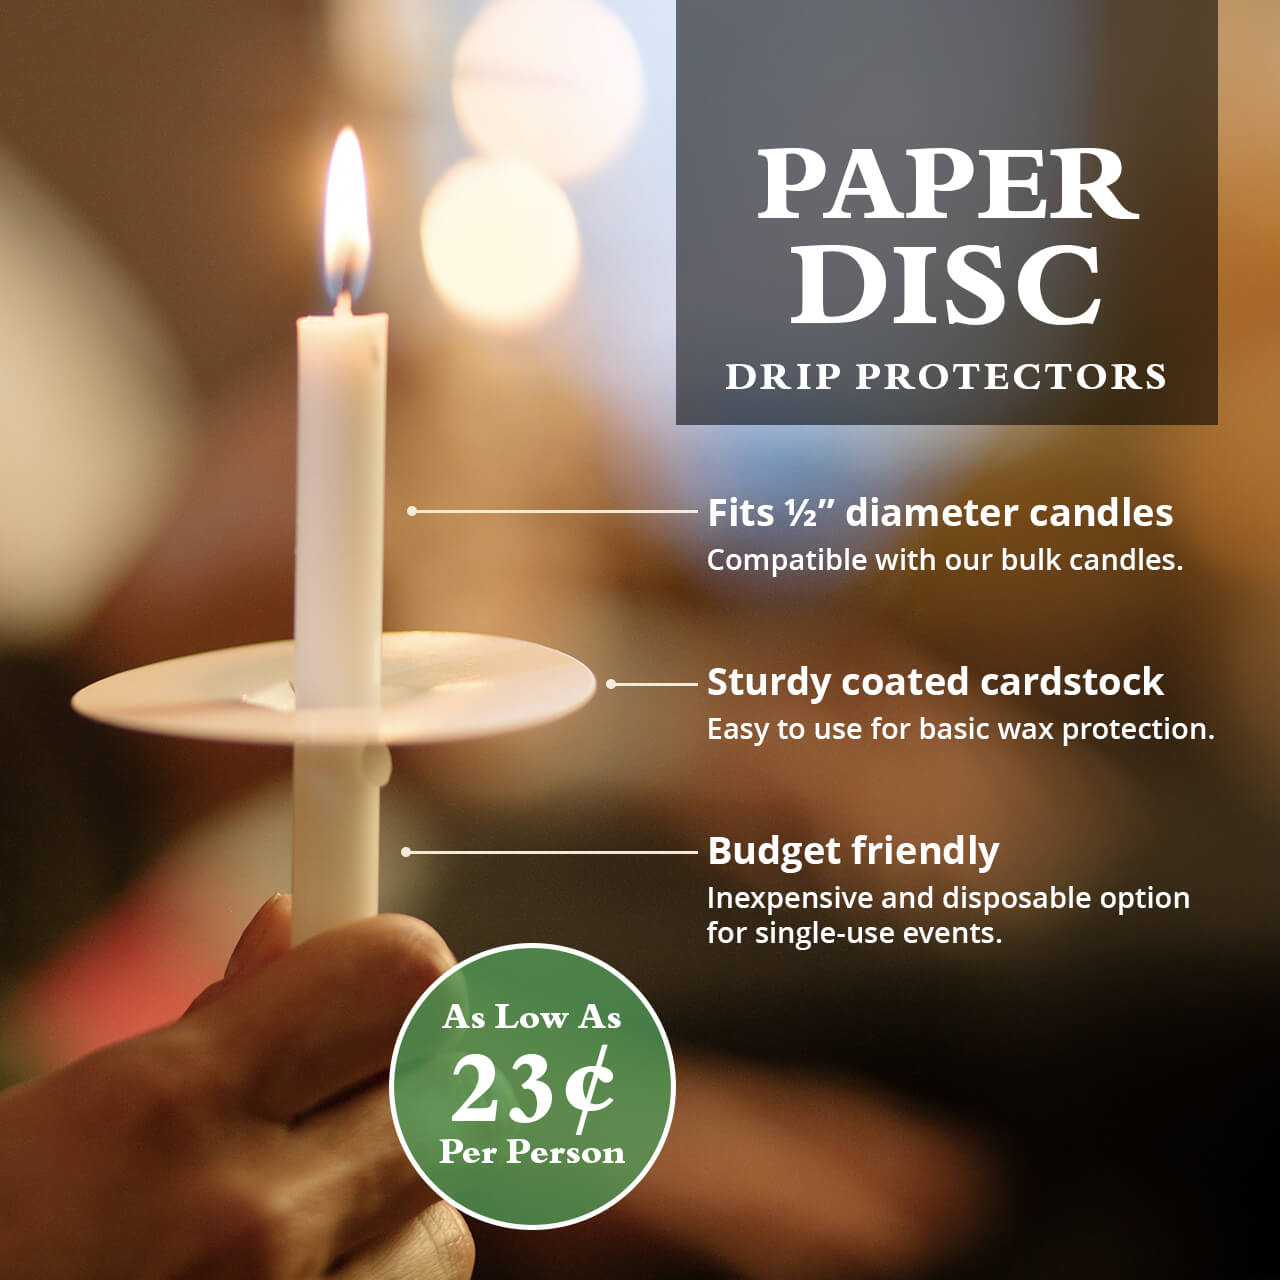 Paper Disc Drip Protectors Drip Protectors